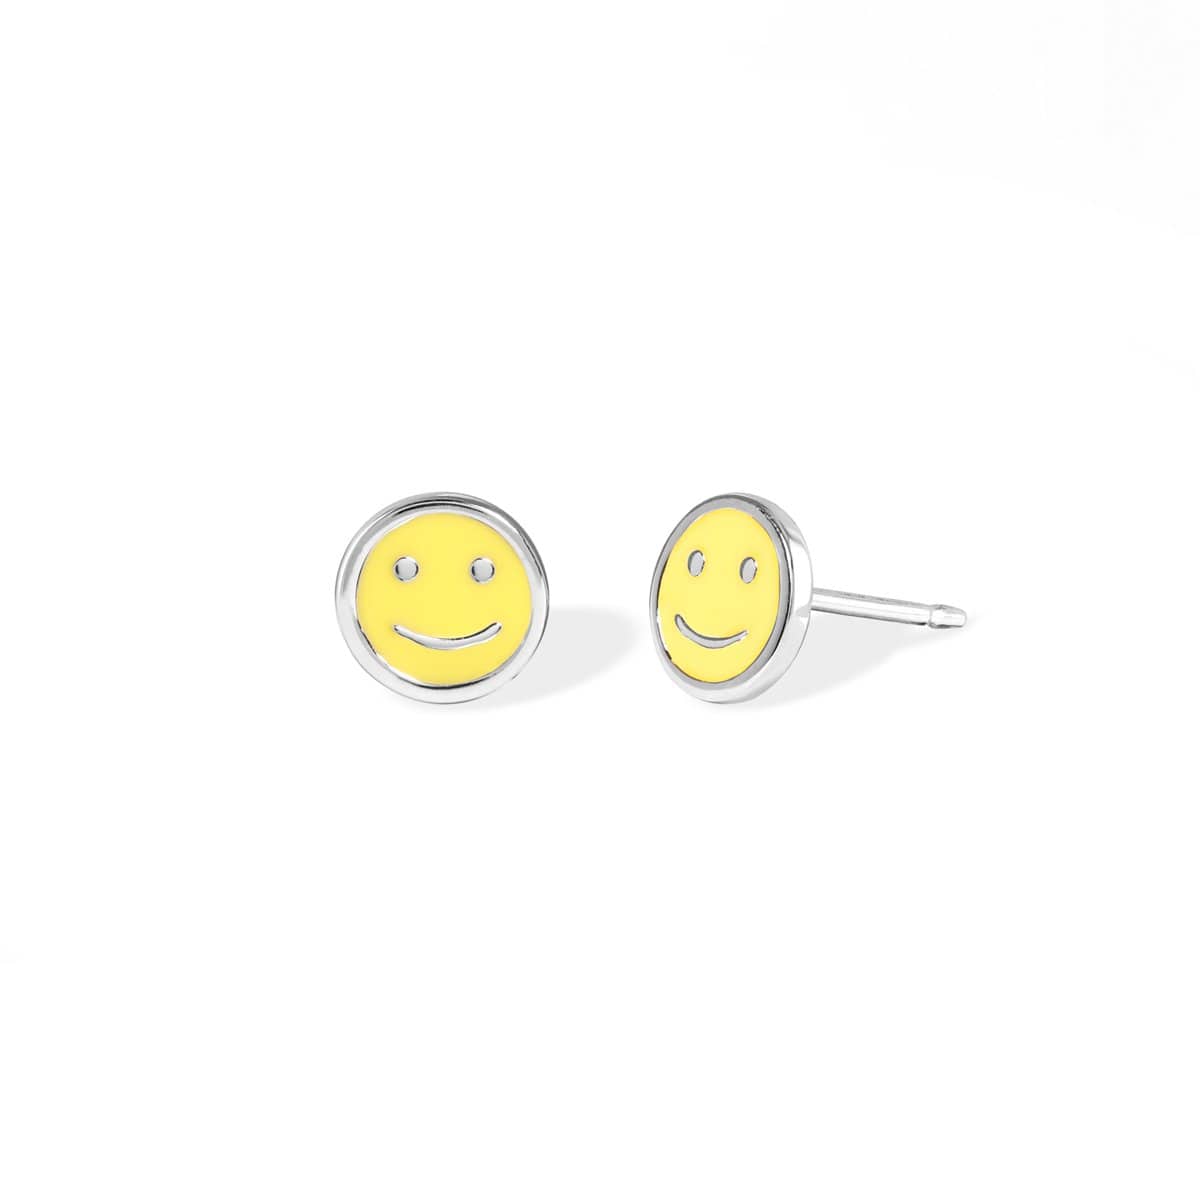 Boma Jewelry Earrings Yellow Emoji Face Studs